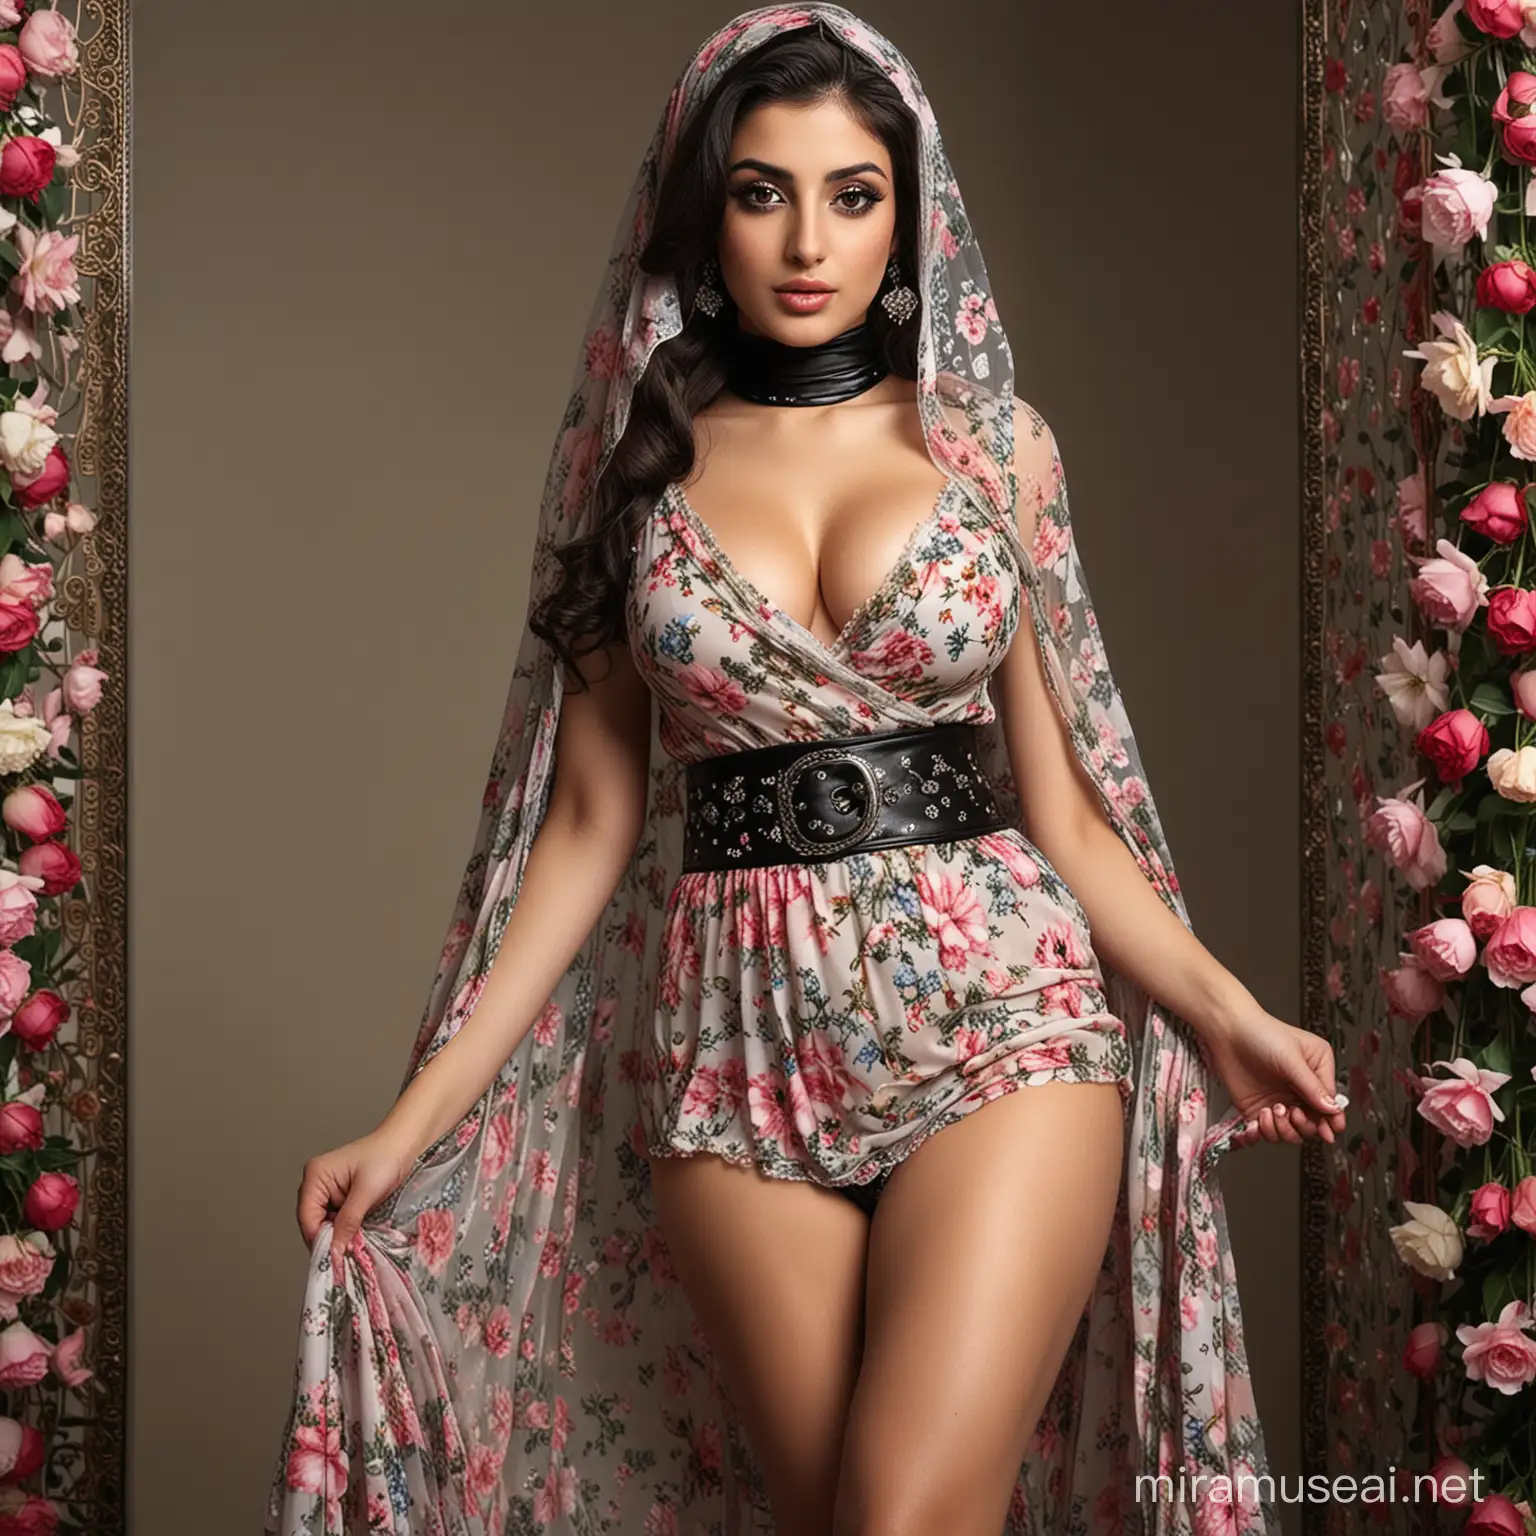 یک دختر حجابی ایرانی با اندام خیلی هیکلی و بزرگ، و قد بلند چشم‌ بزرگ و سیاه دارد، و لب سکسی، و سینه بزرگ، و در کمرش کمربند سیاه، و ران بزرگ و سکسی دارند، لباس گلدار پوشید و چپلک پاشینه بلند دارد